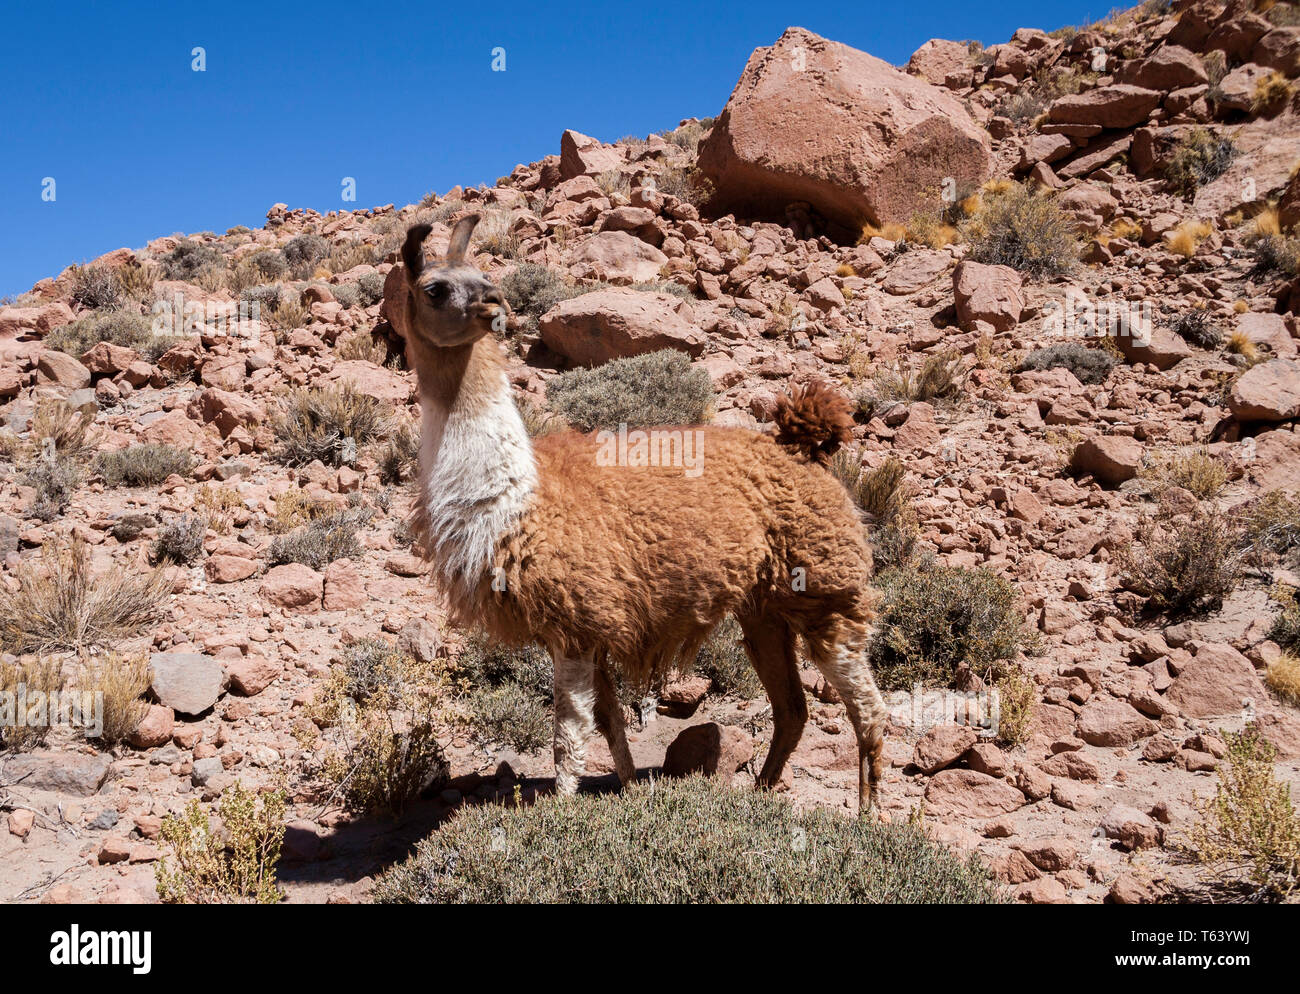 Lama, in seinem natürlichen Lebensraum hoch in der Atacama Wüste südlich der chilenischen Anden rund 4300 Meter über dem Meeresspiegel. Stockfoto